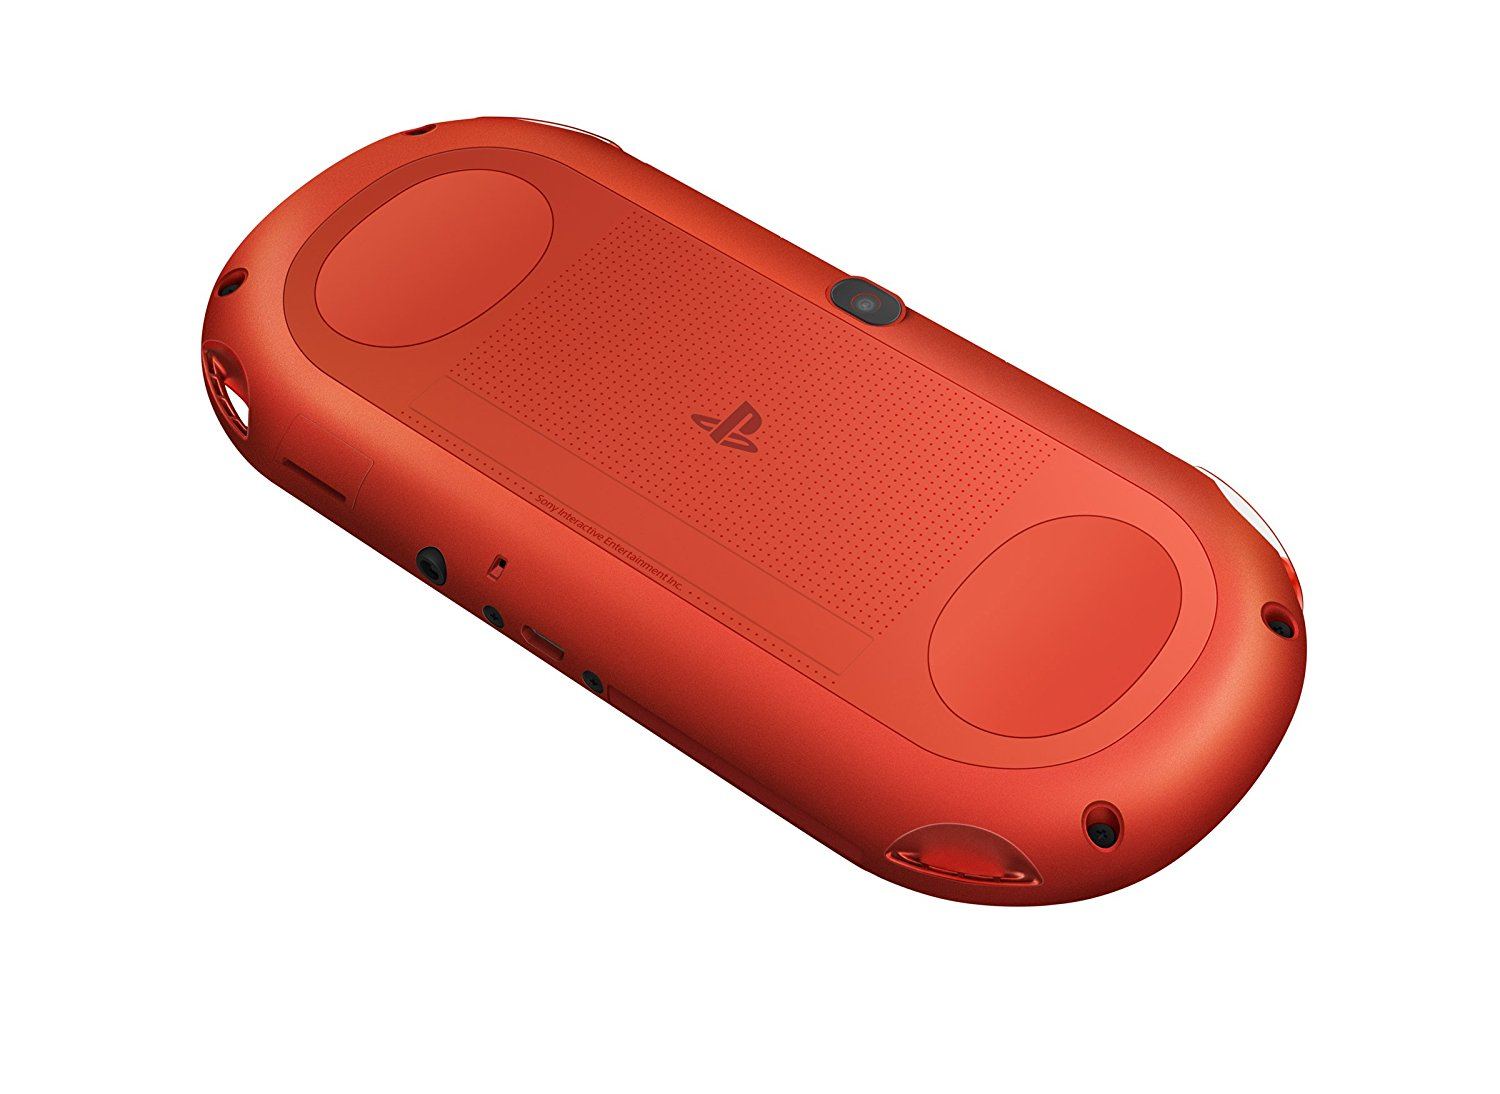 PS Vita PlayStation Vita New Slim Model - PCH-2000 (Metallic Red)